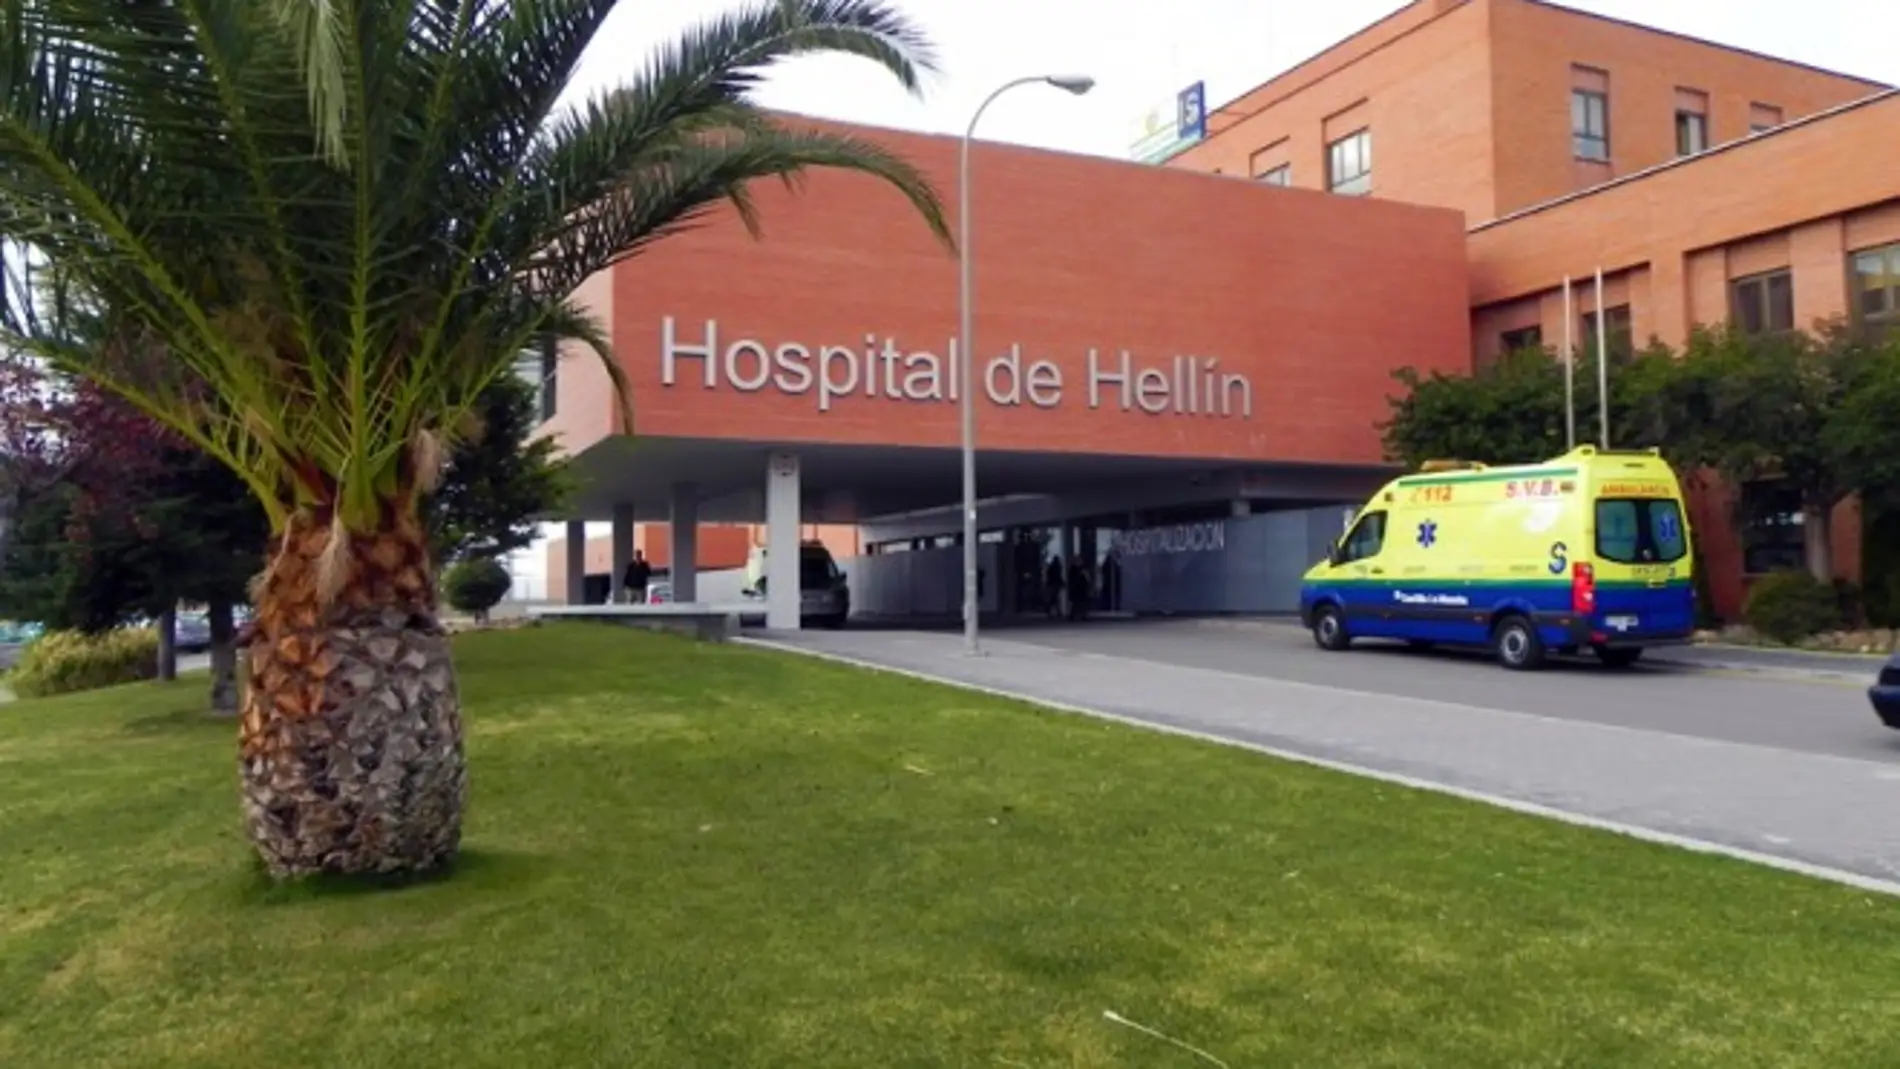 El trabajo de los servicios sanitarios de Hellín ha sido elegido como “Tamborilero 2022” en el municipio